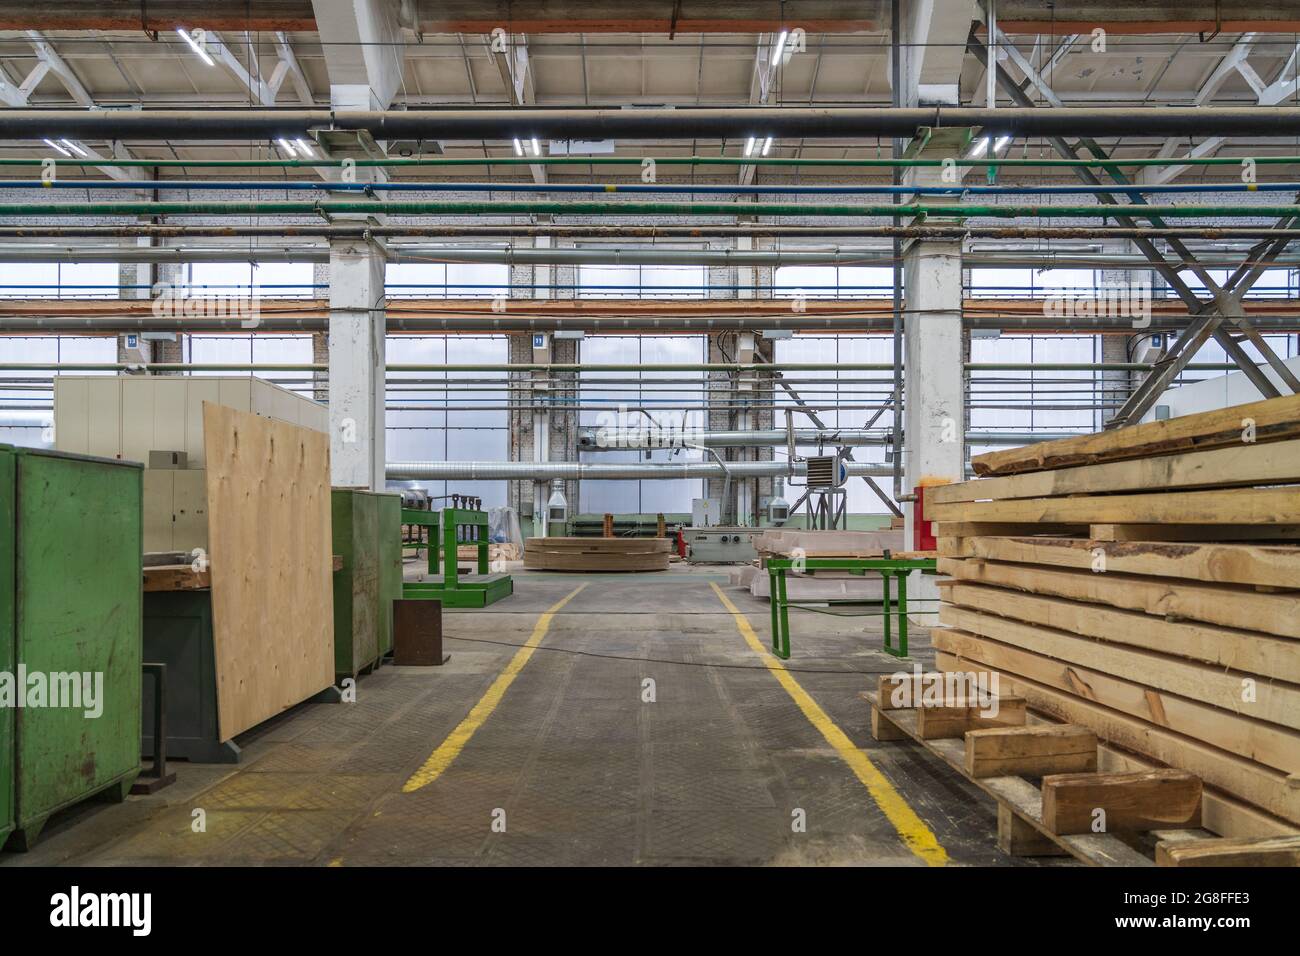 Intérieur typique d'une usine de travail du bois, grand atelier avec machines automatisées et piles de bois. Banque D'Images